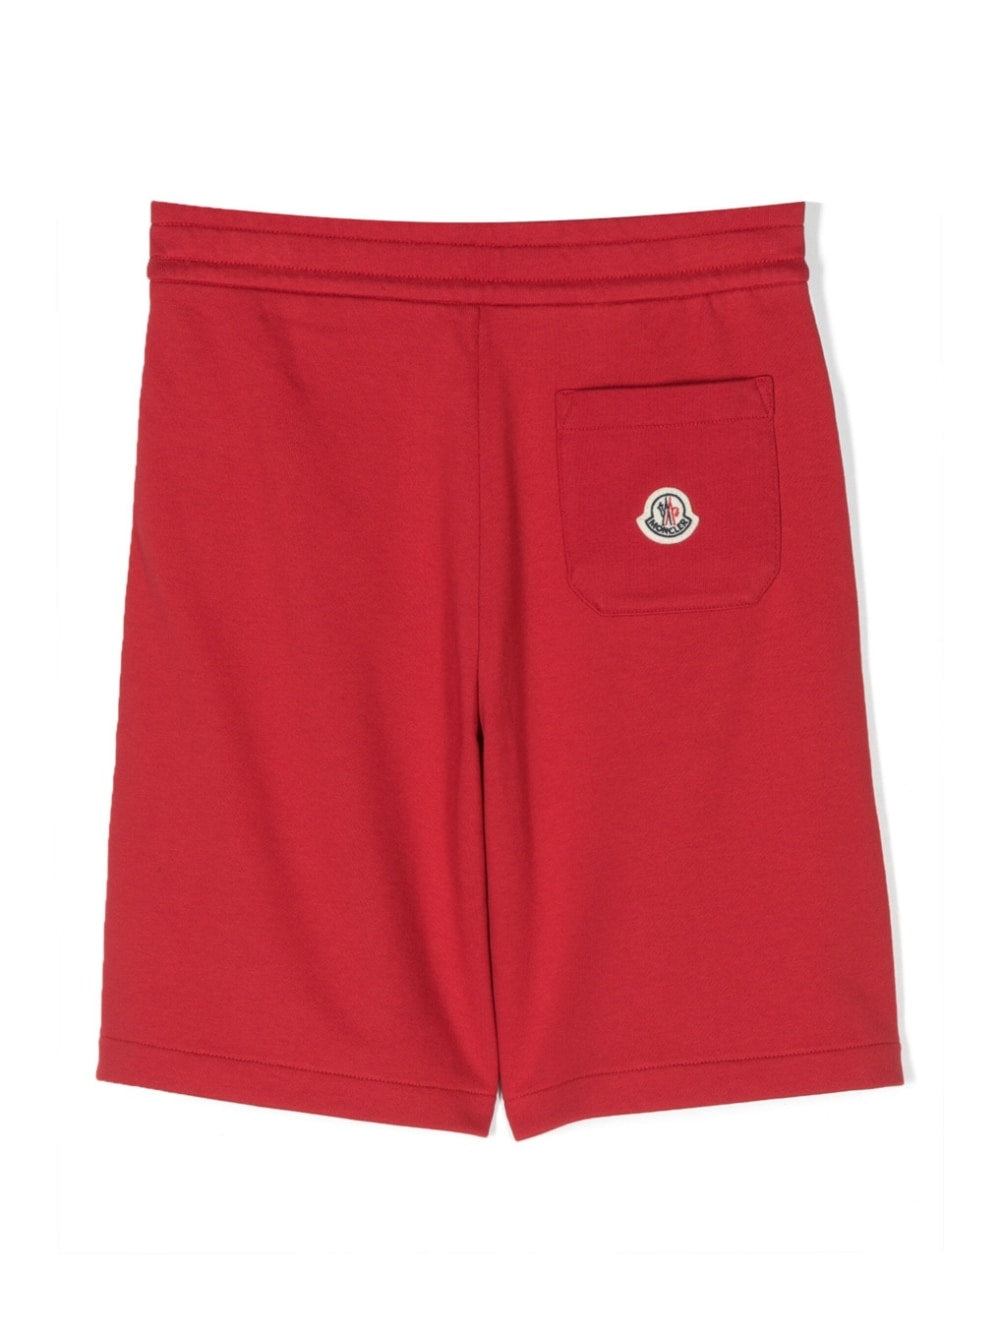 Pantaloncino rosso per bambino con logo